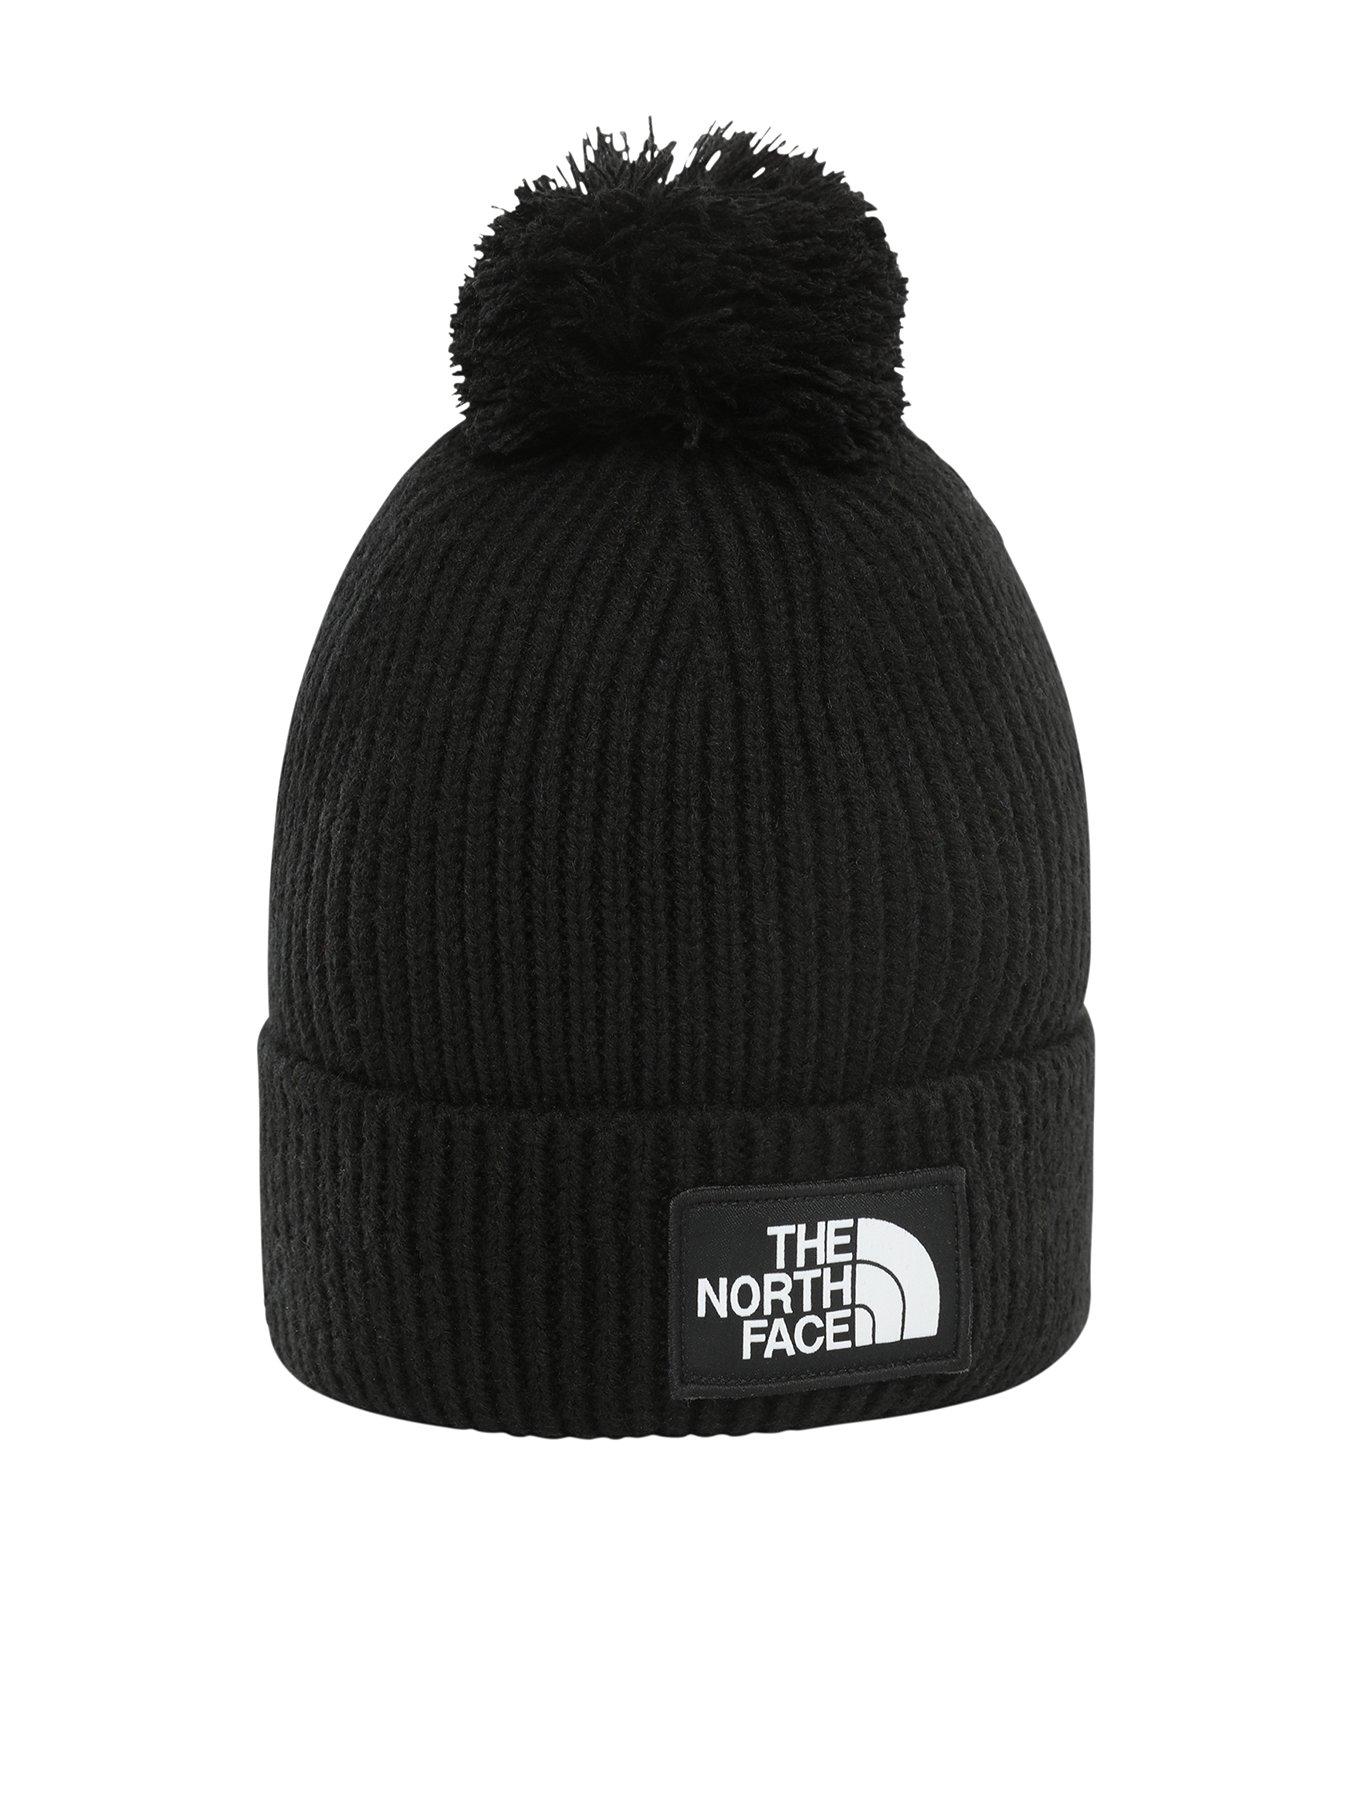 North Face Bobble Hat Mens | vlr.eng.br